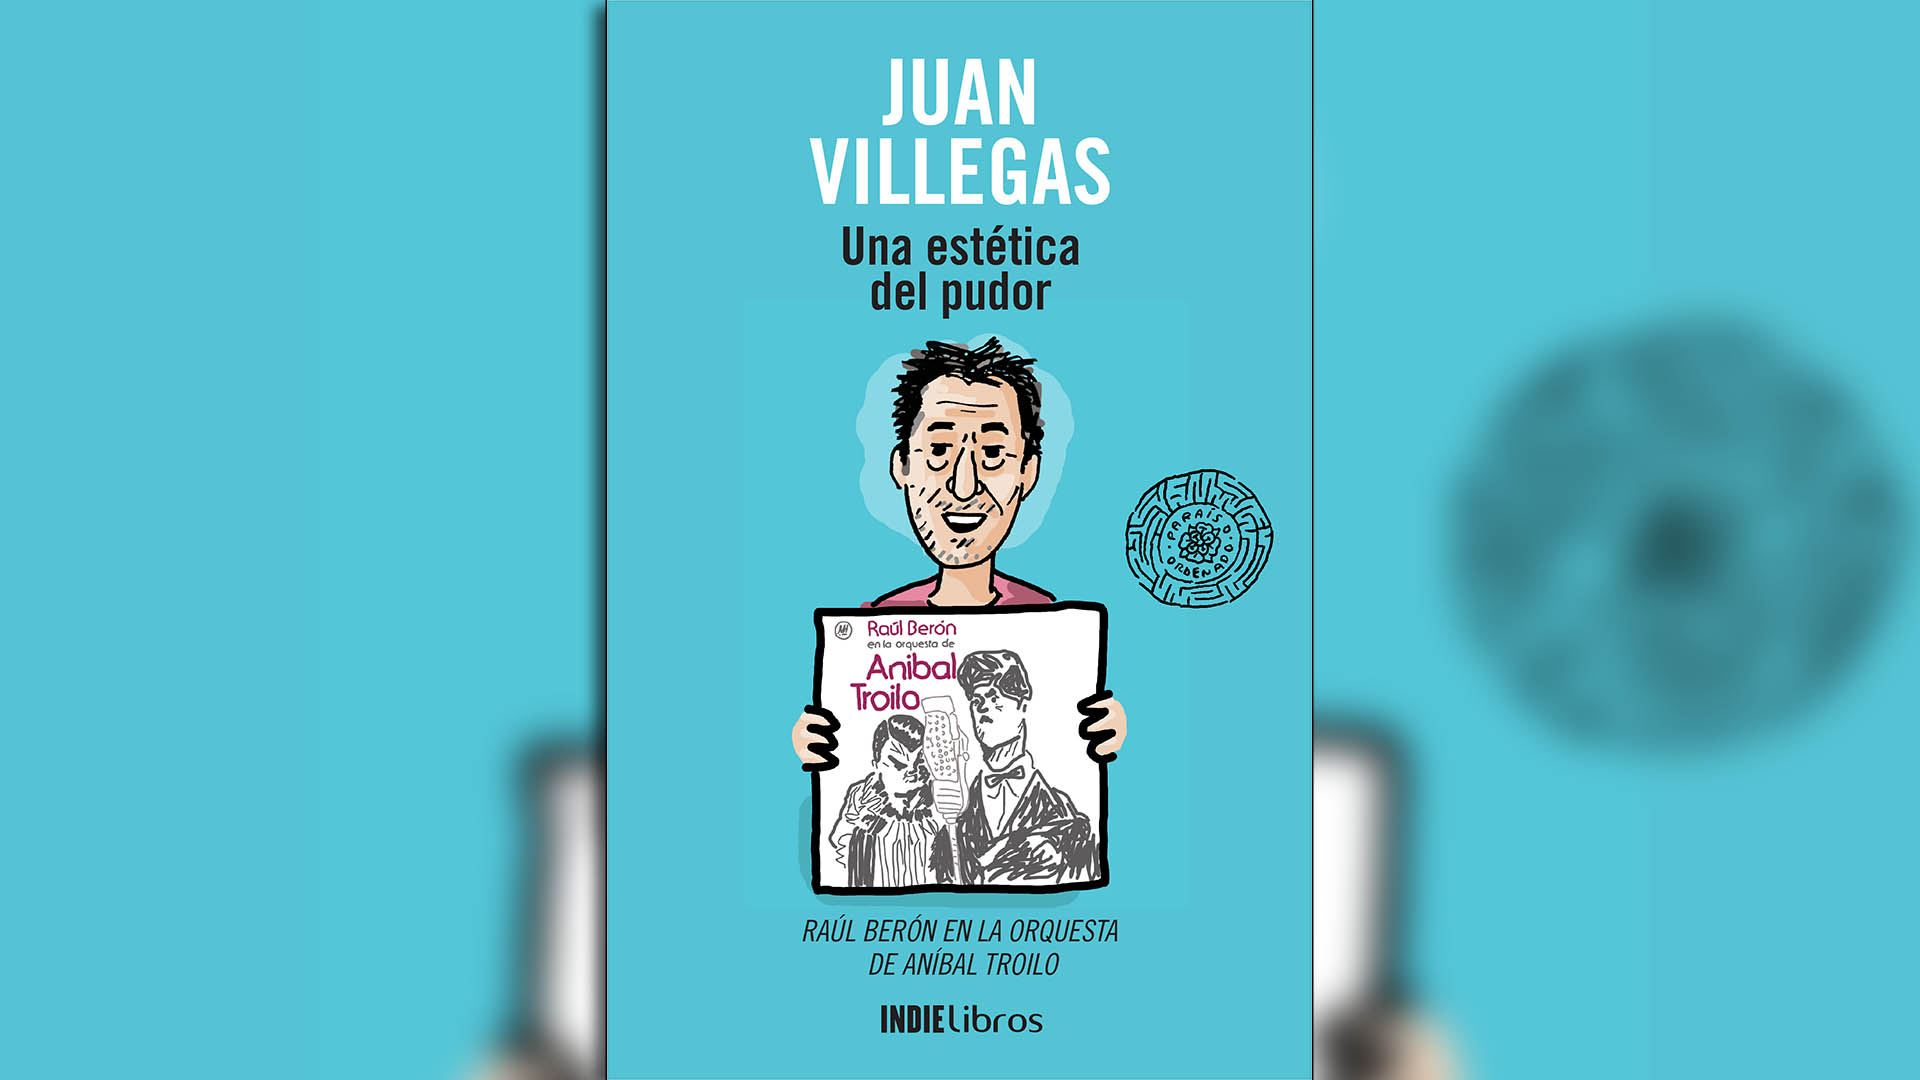 Juan Villegas sobre su ensayo exclusivo de Leamos.com: “Hay que ir contra la idea del tango como representación de la argentinidad”